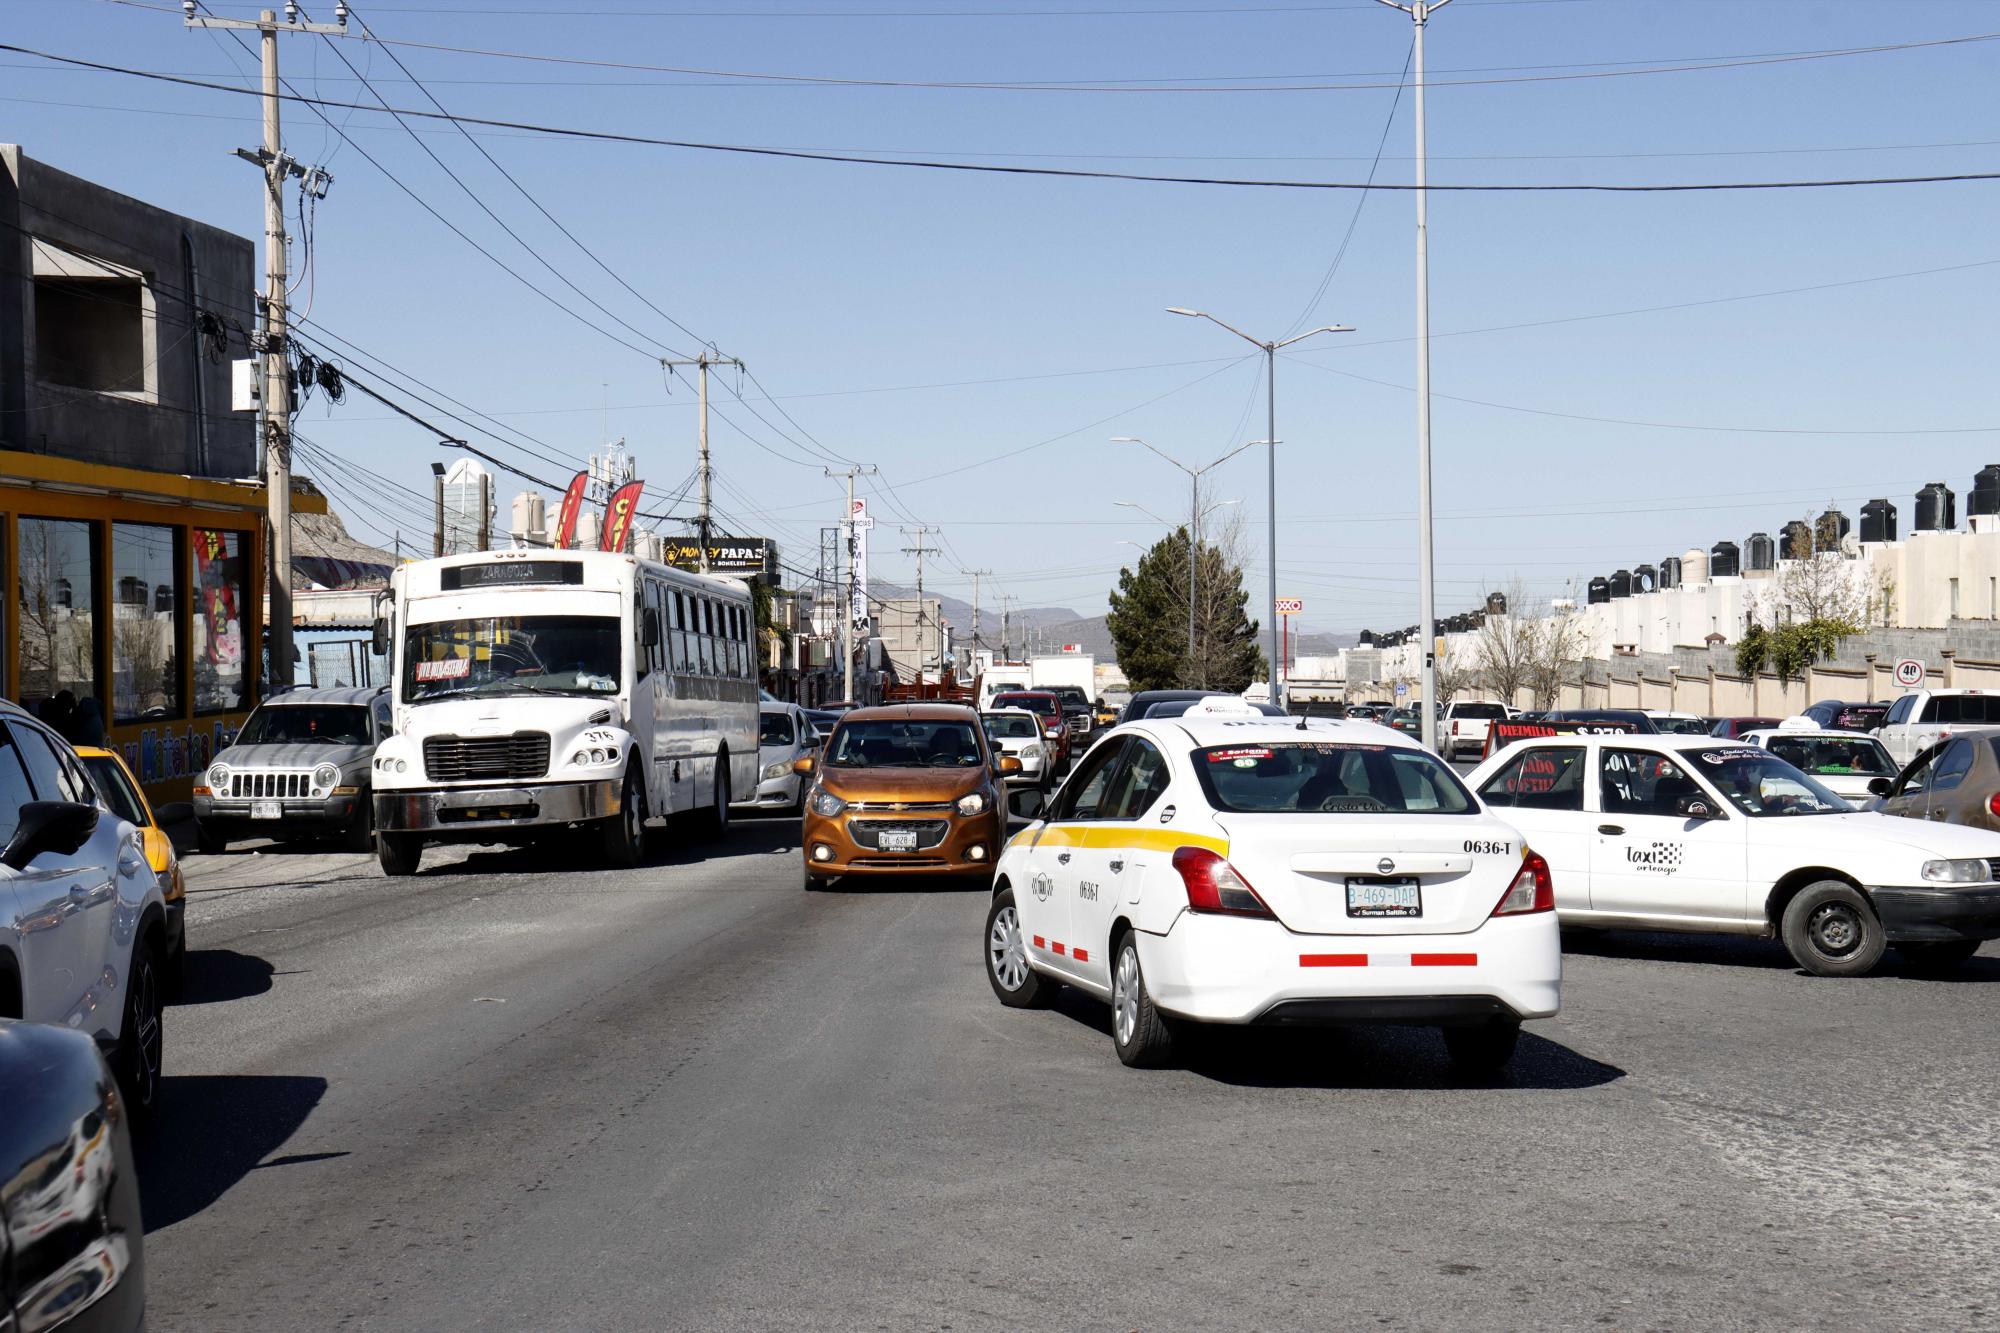 $!Caos vehicular en Ciudad Mirasierra: falta de señalización complica el tráfico.